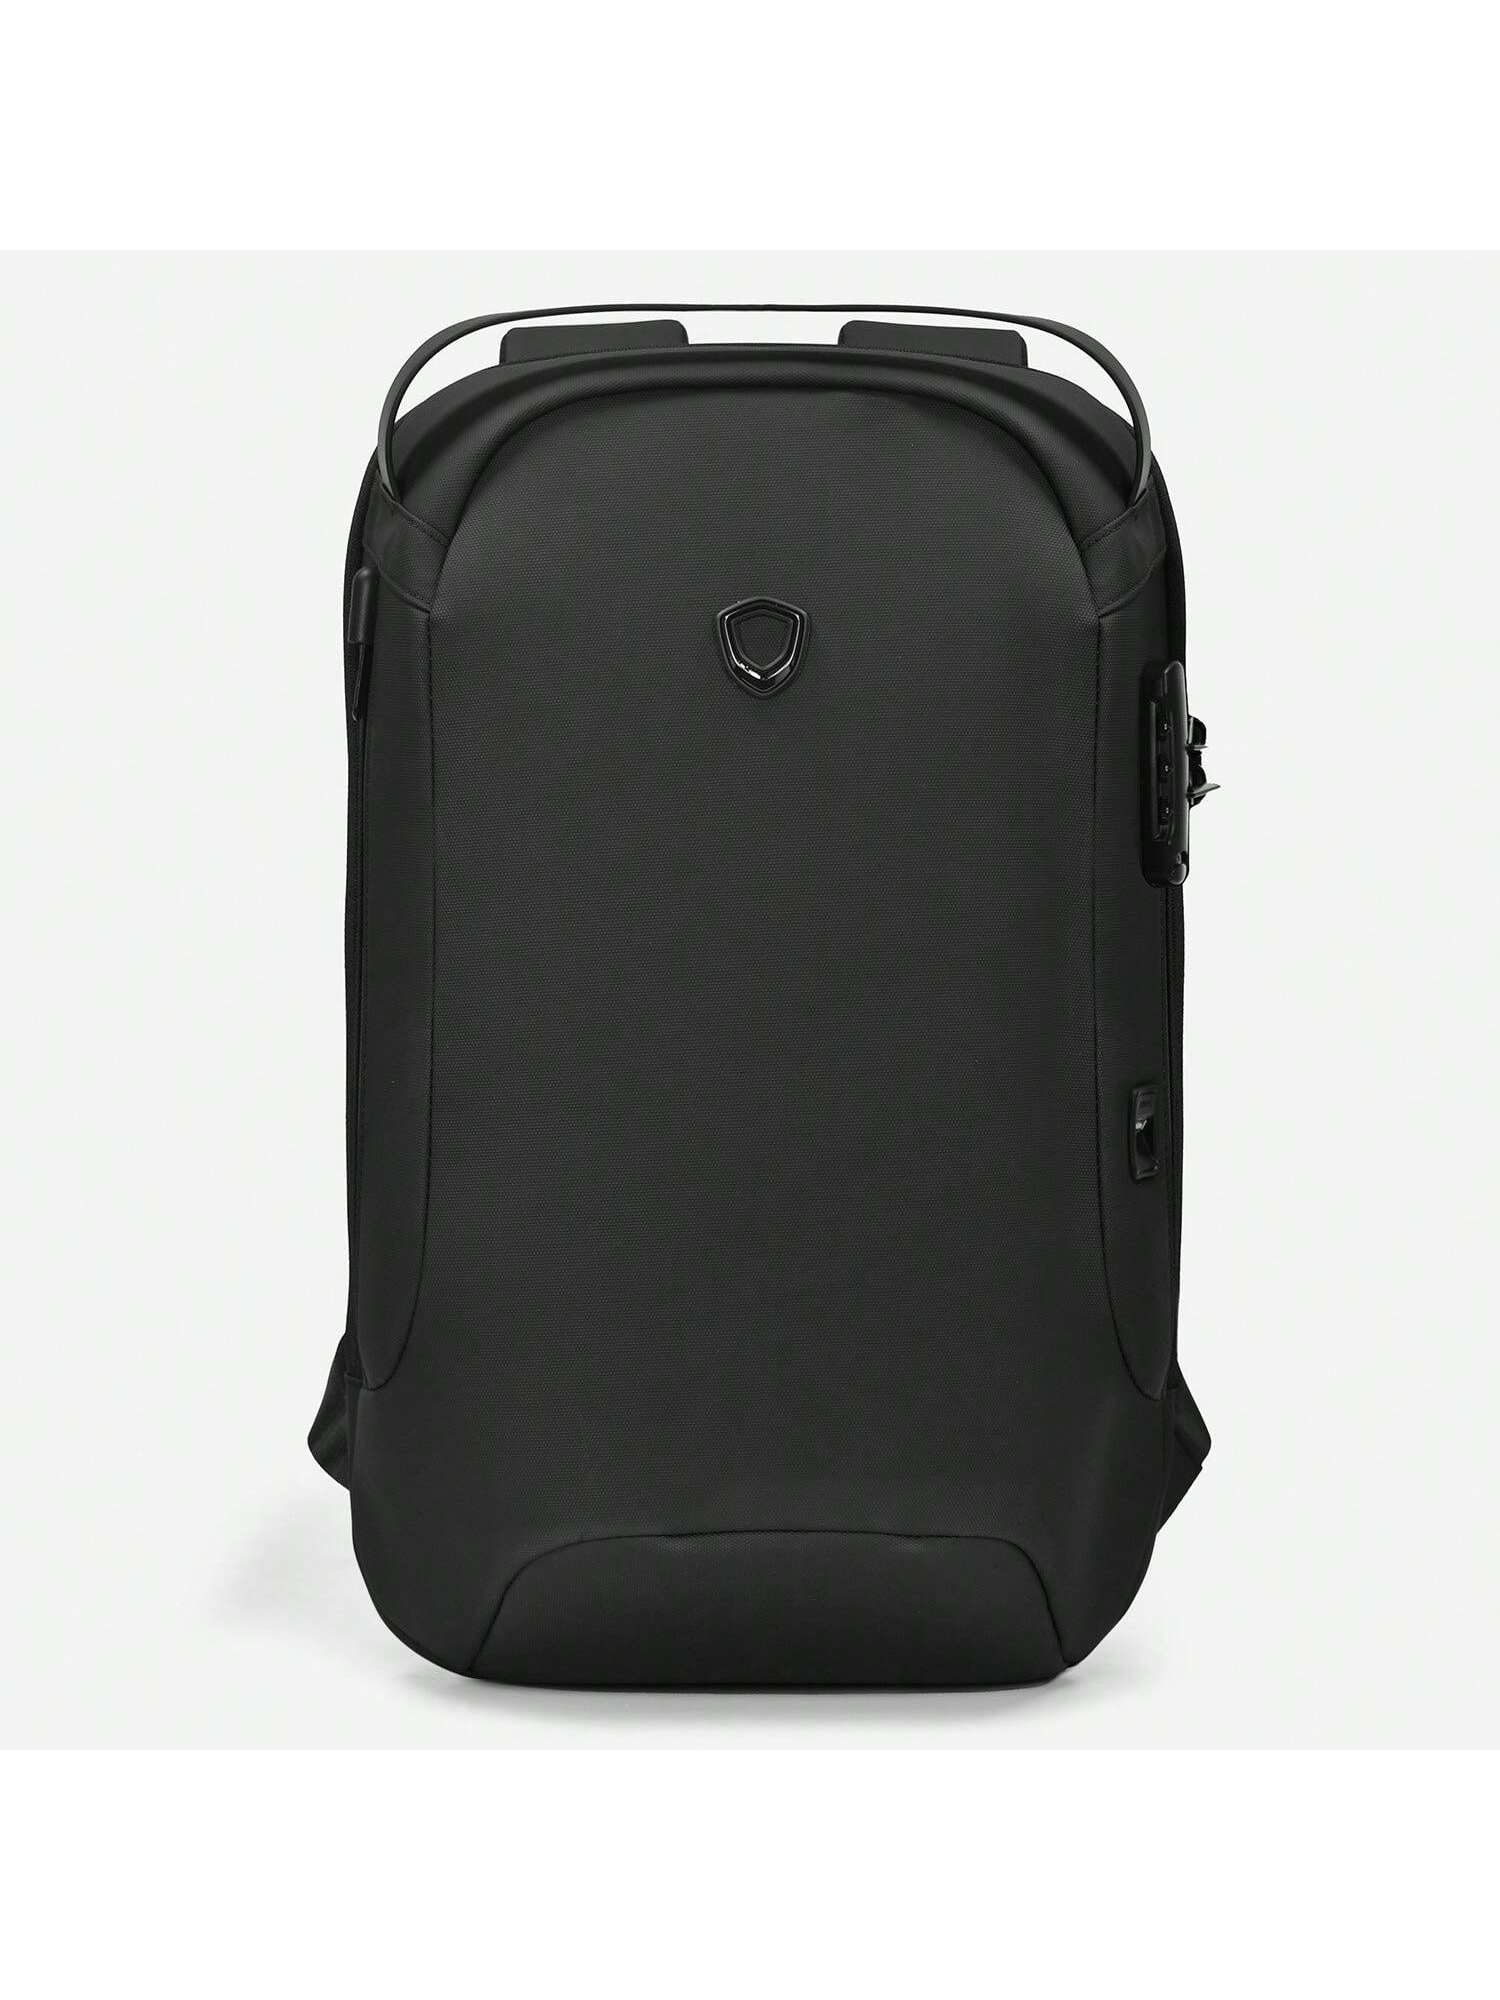 Матовый водостойкий рюкзак Frailey с USB-портом и кодовым замком, черный цена и фото